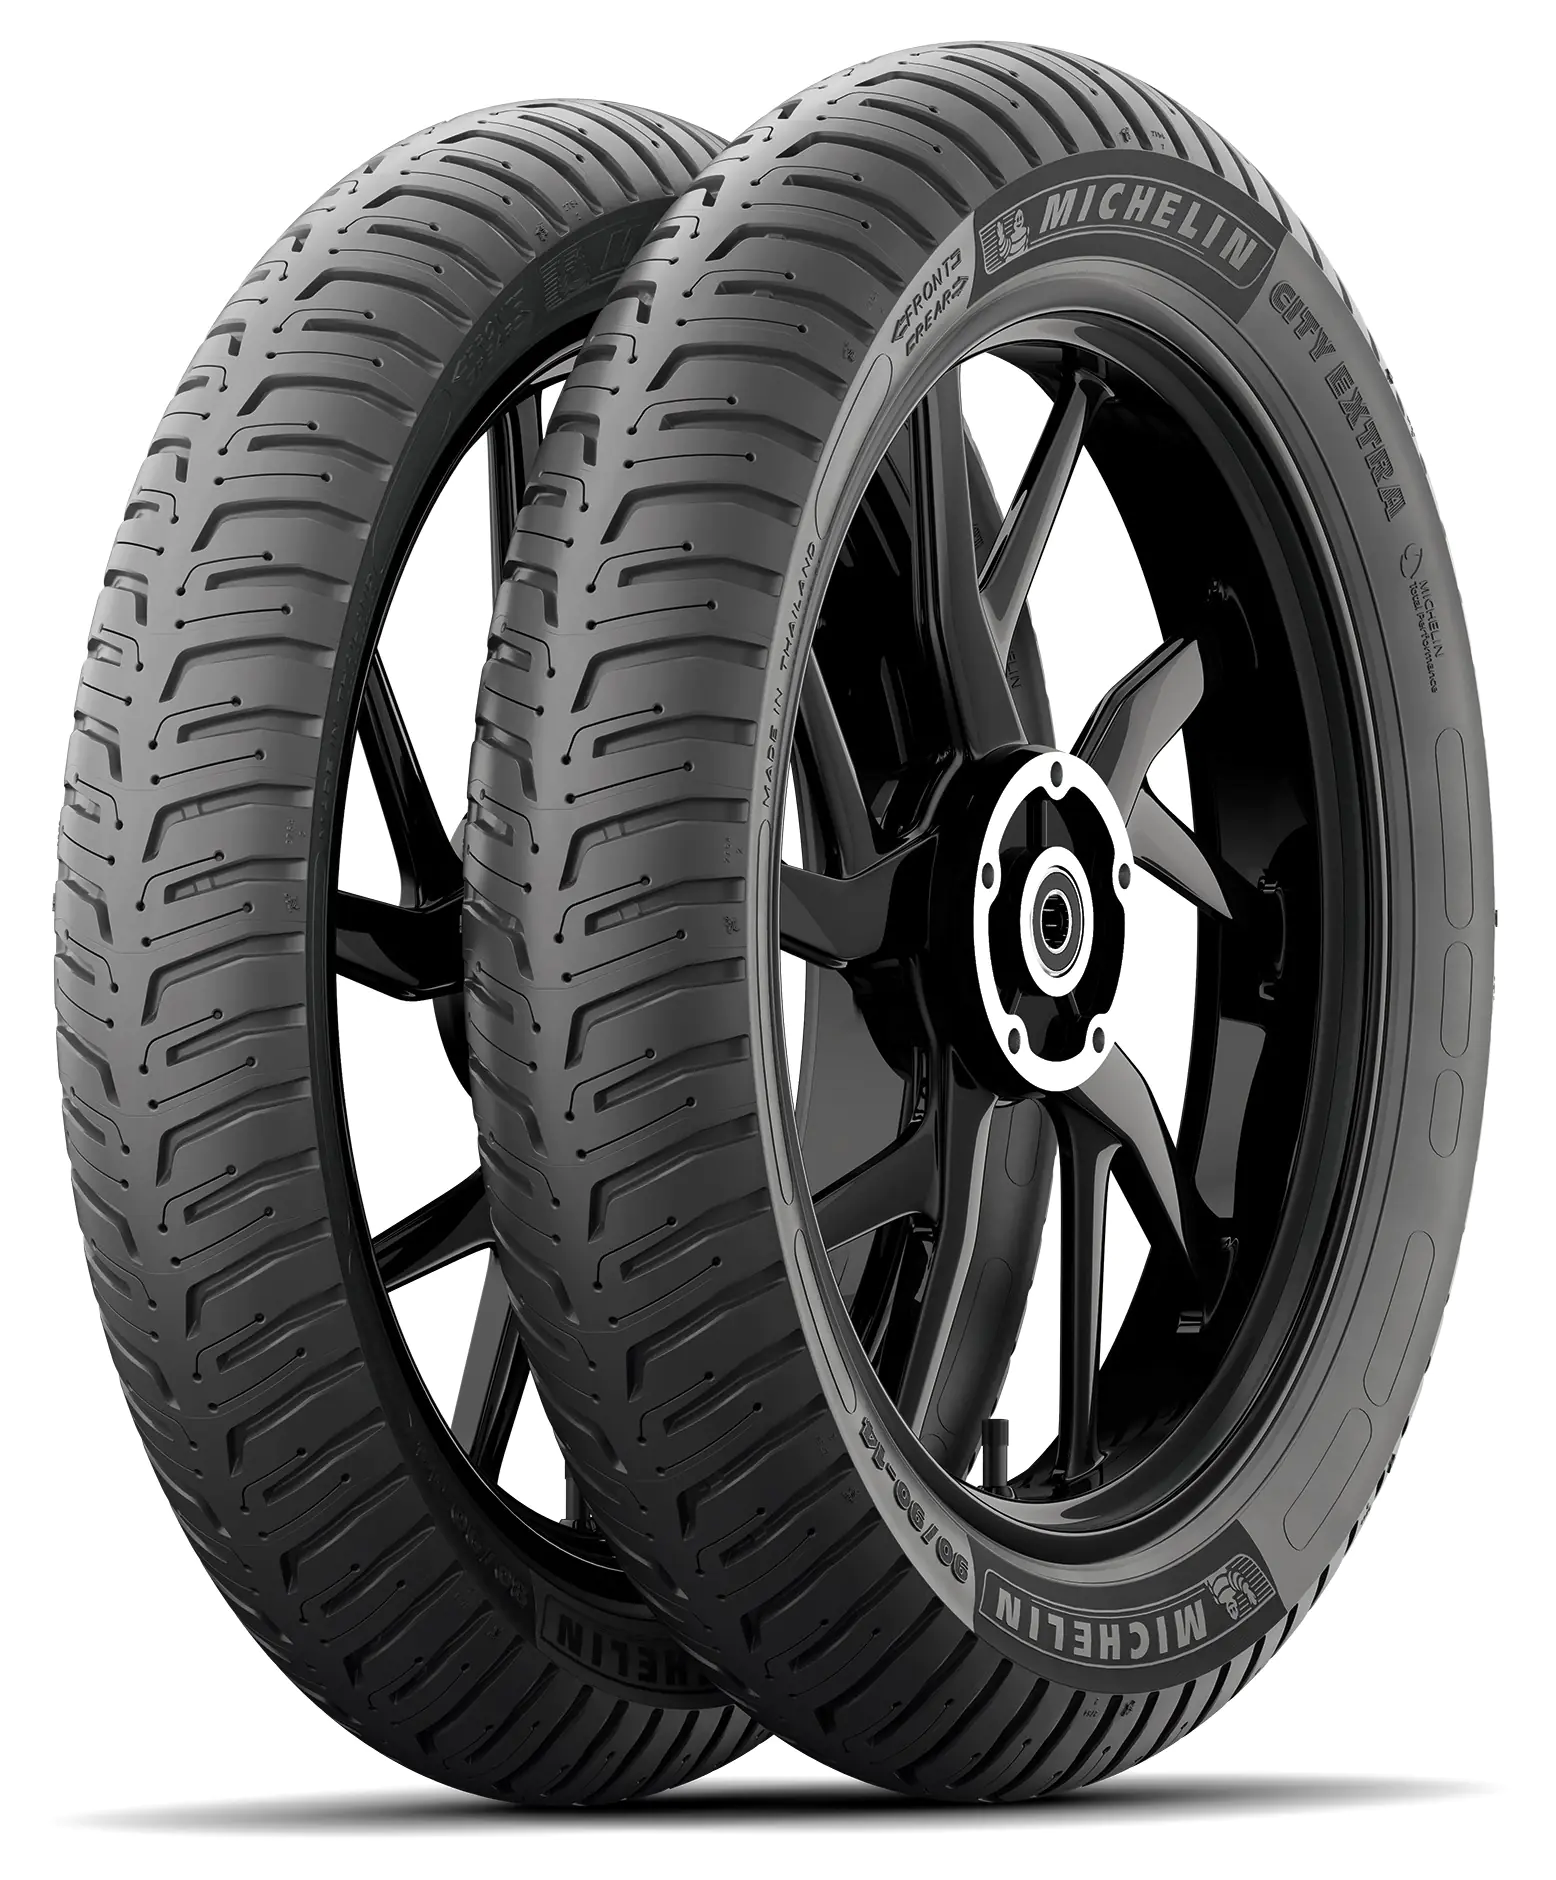 Michelin Michelin 90/90 R18 57S CITY EXTRA pneumatici nuovi Estivo 